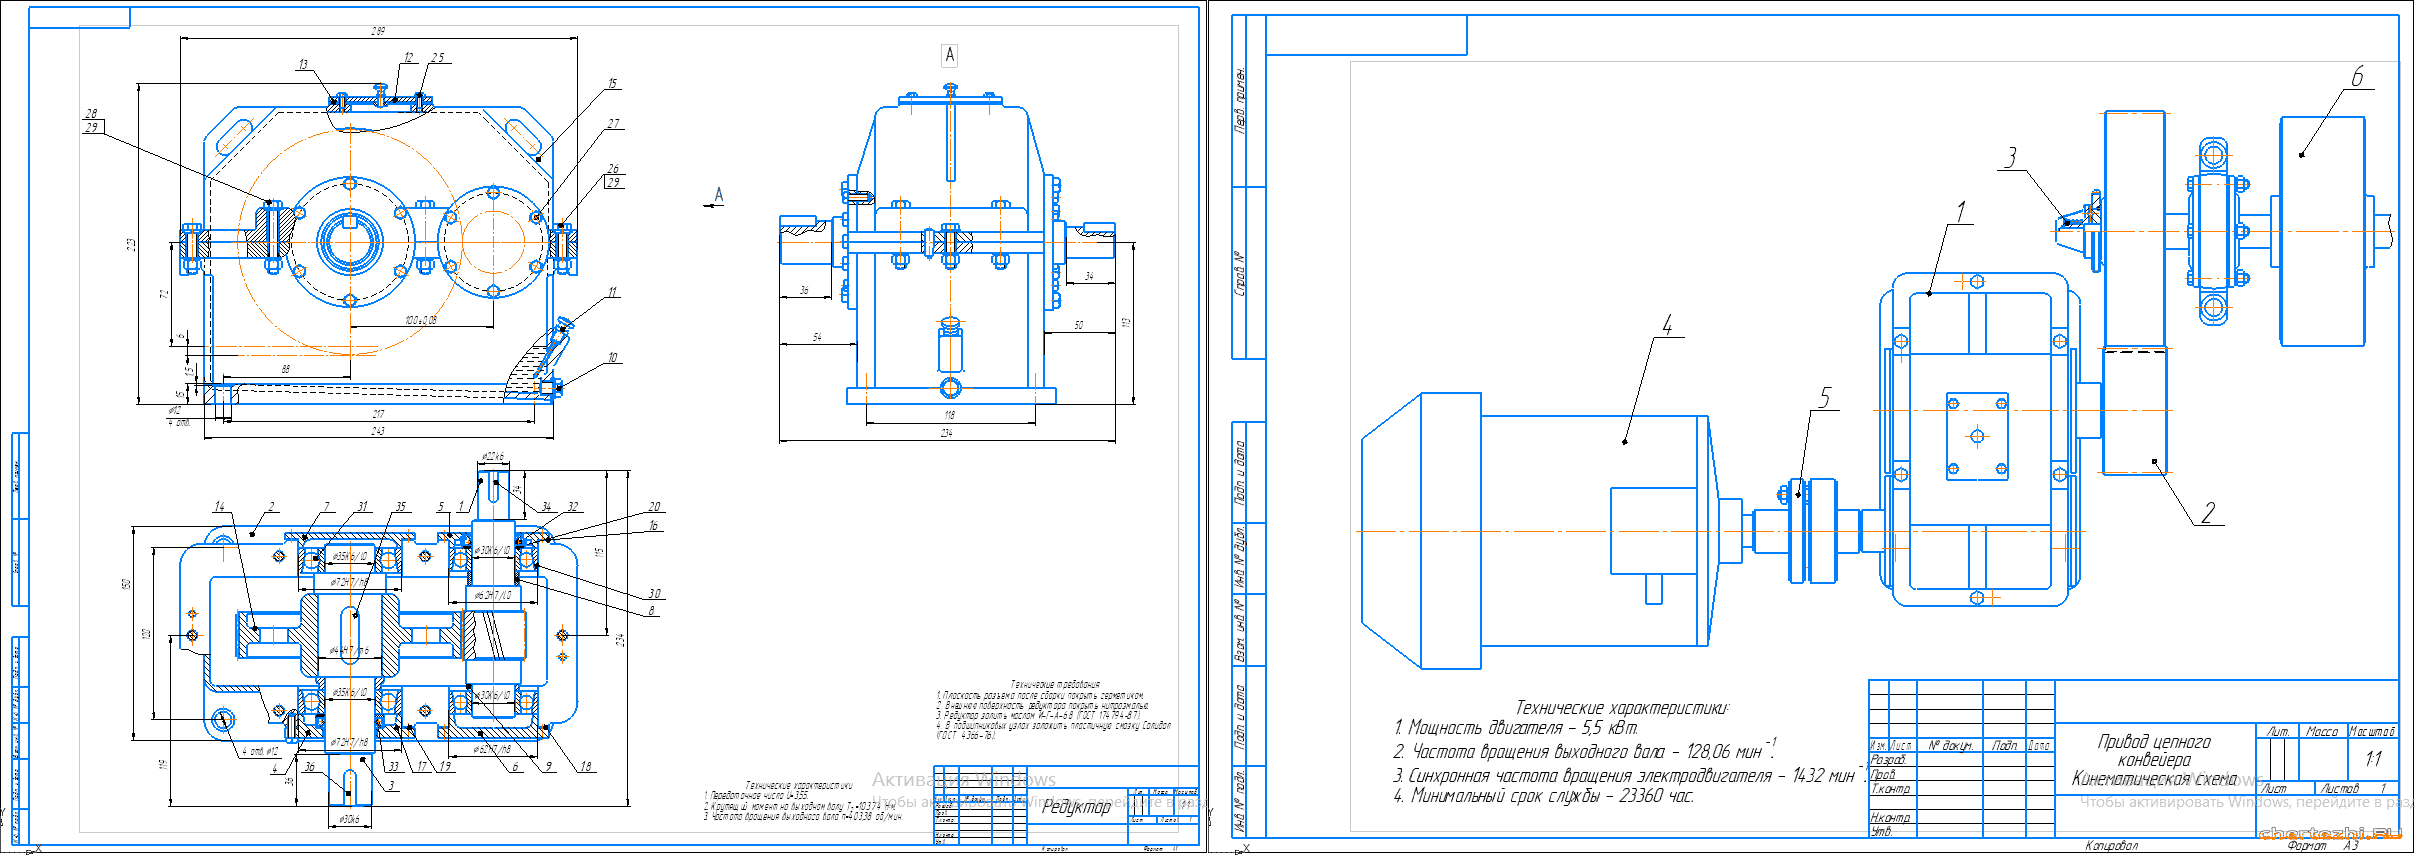 Курсовой проект - Привод ленточного конвейера (одноступенчатый цилиндрический прямозубый редуктор)